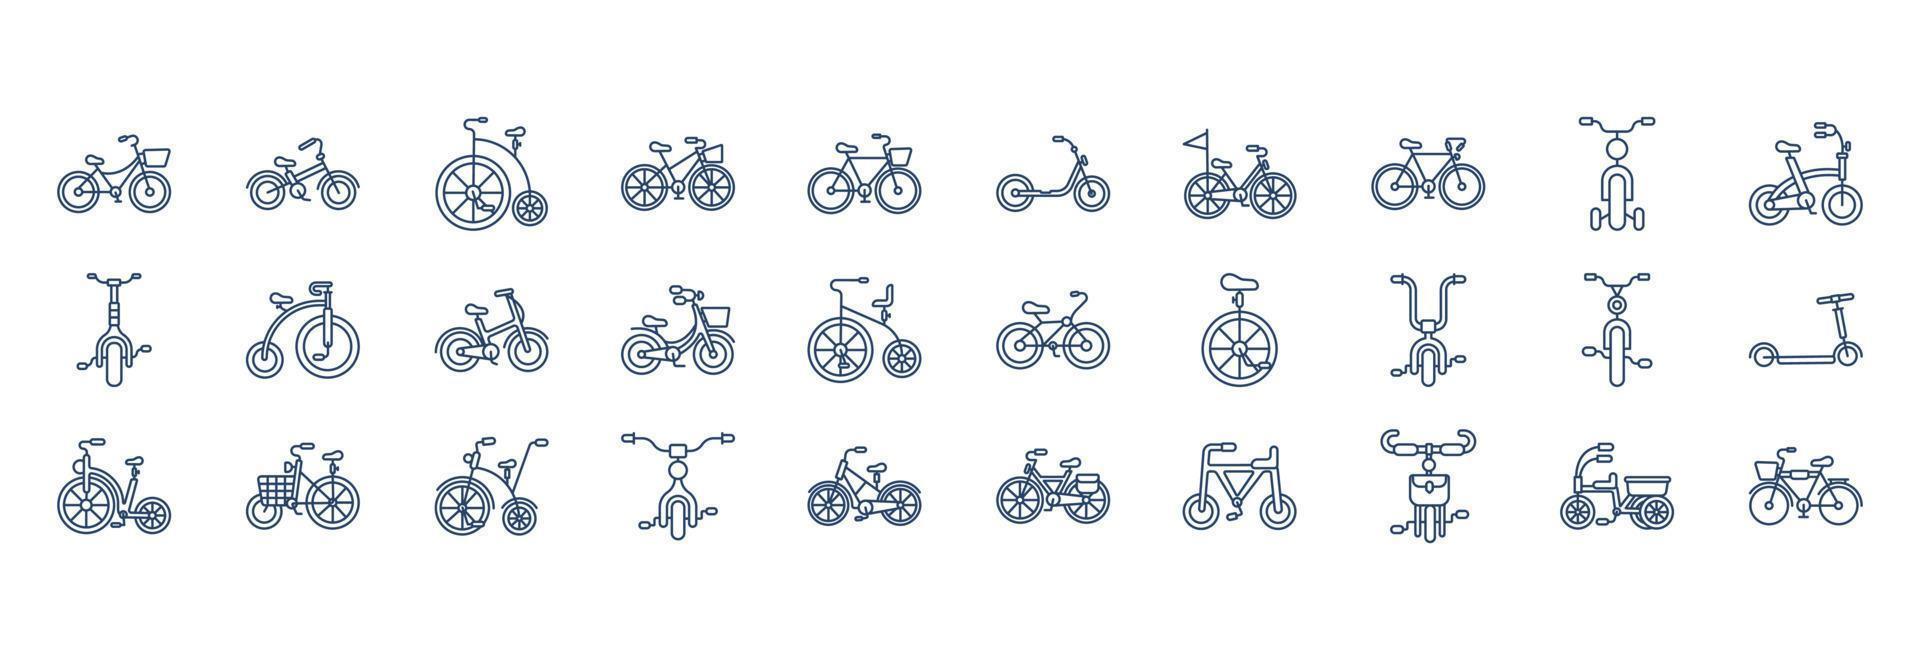 coleção de ícones relacionados à bicicleta, incluindo ícones como roda, pedal, assento e muito mais. ilustrações vetoriais, conjunto perfeito de pixels vetor